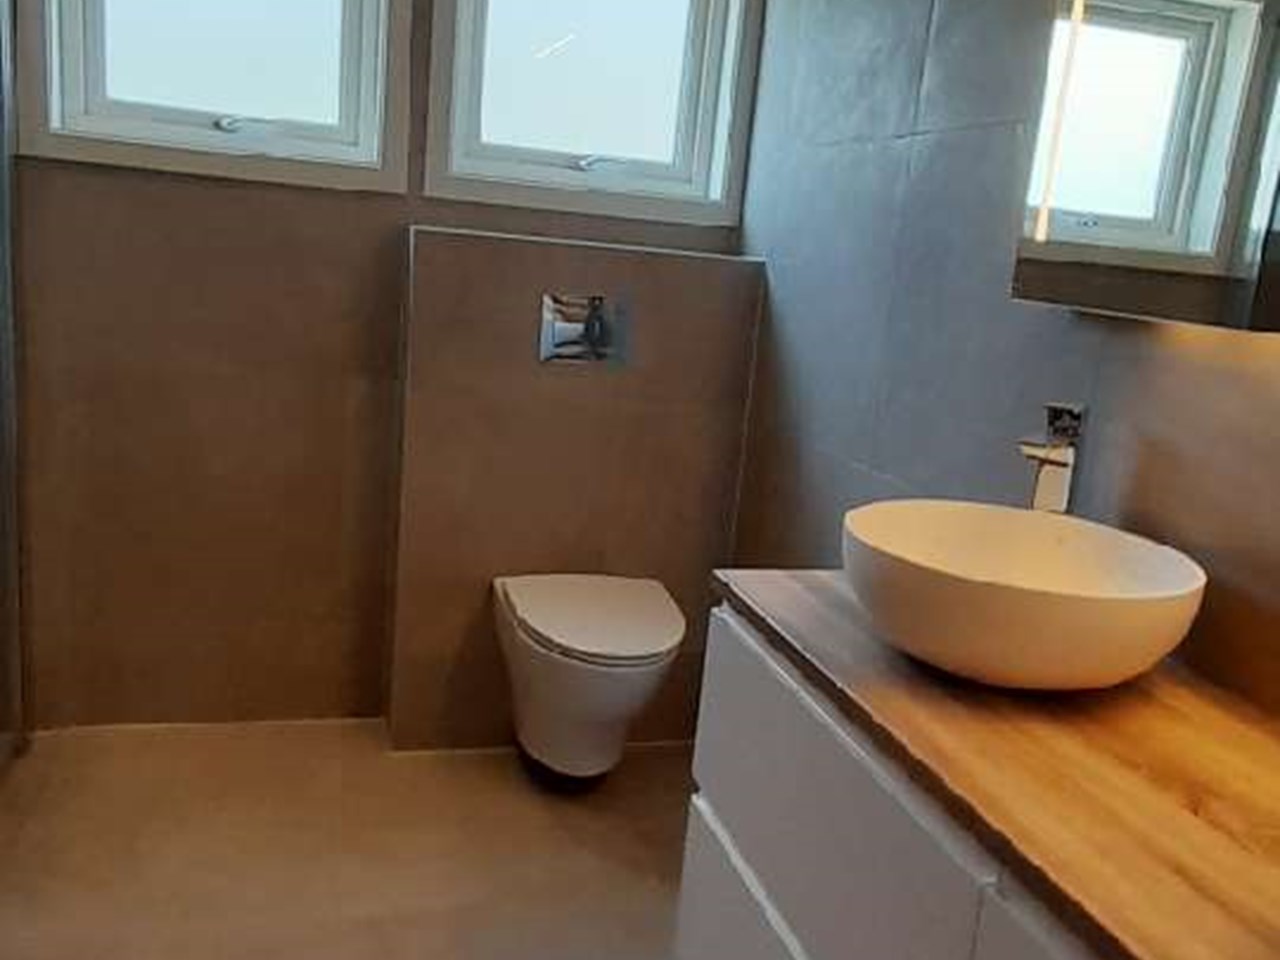 Vegghengt toalett fra Porsgrunn